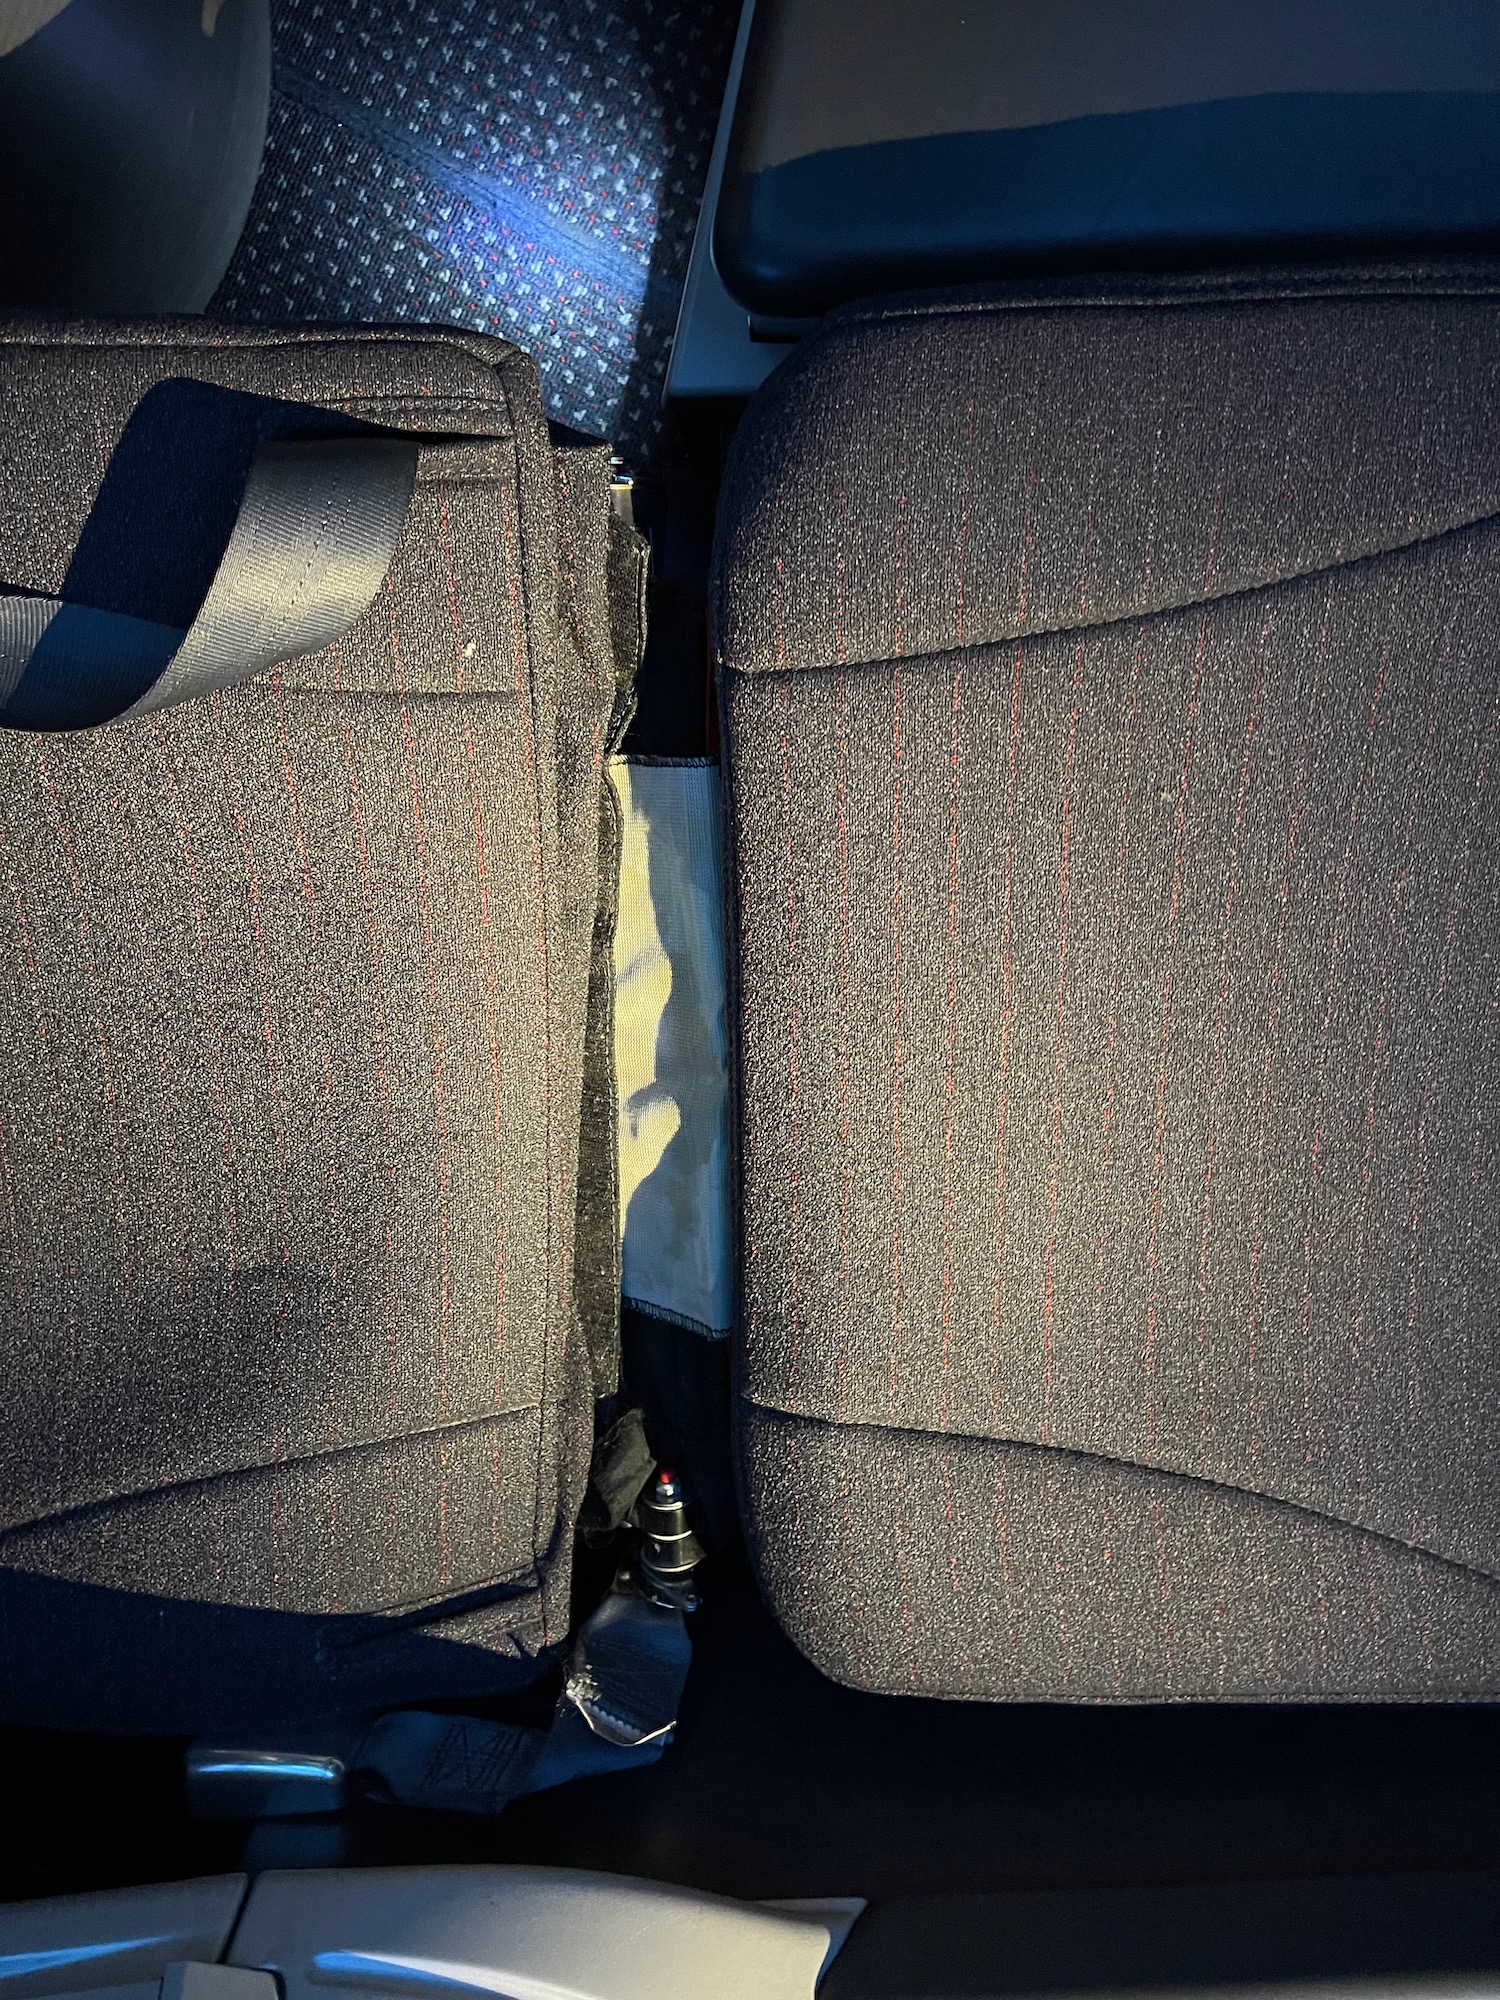 a seat belt in a car